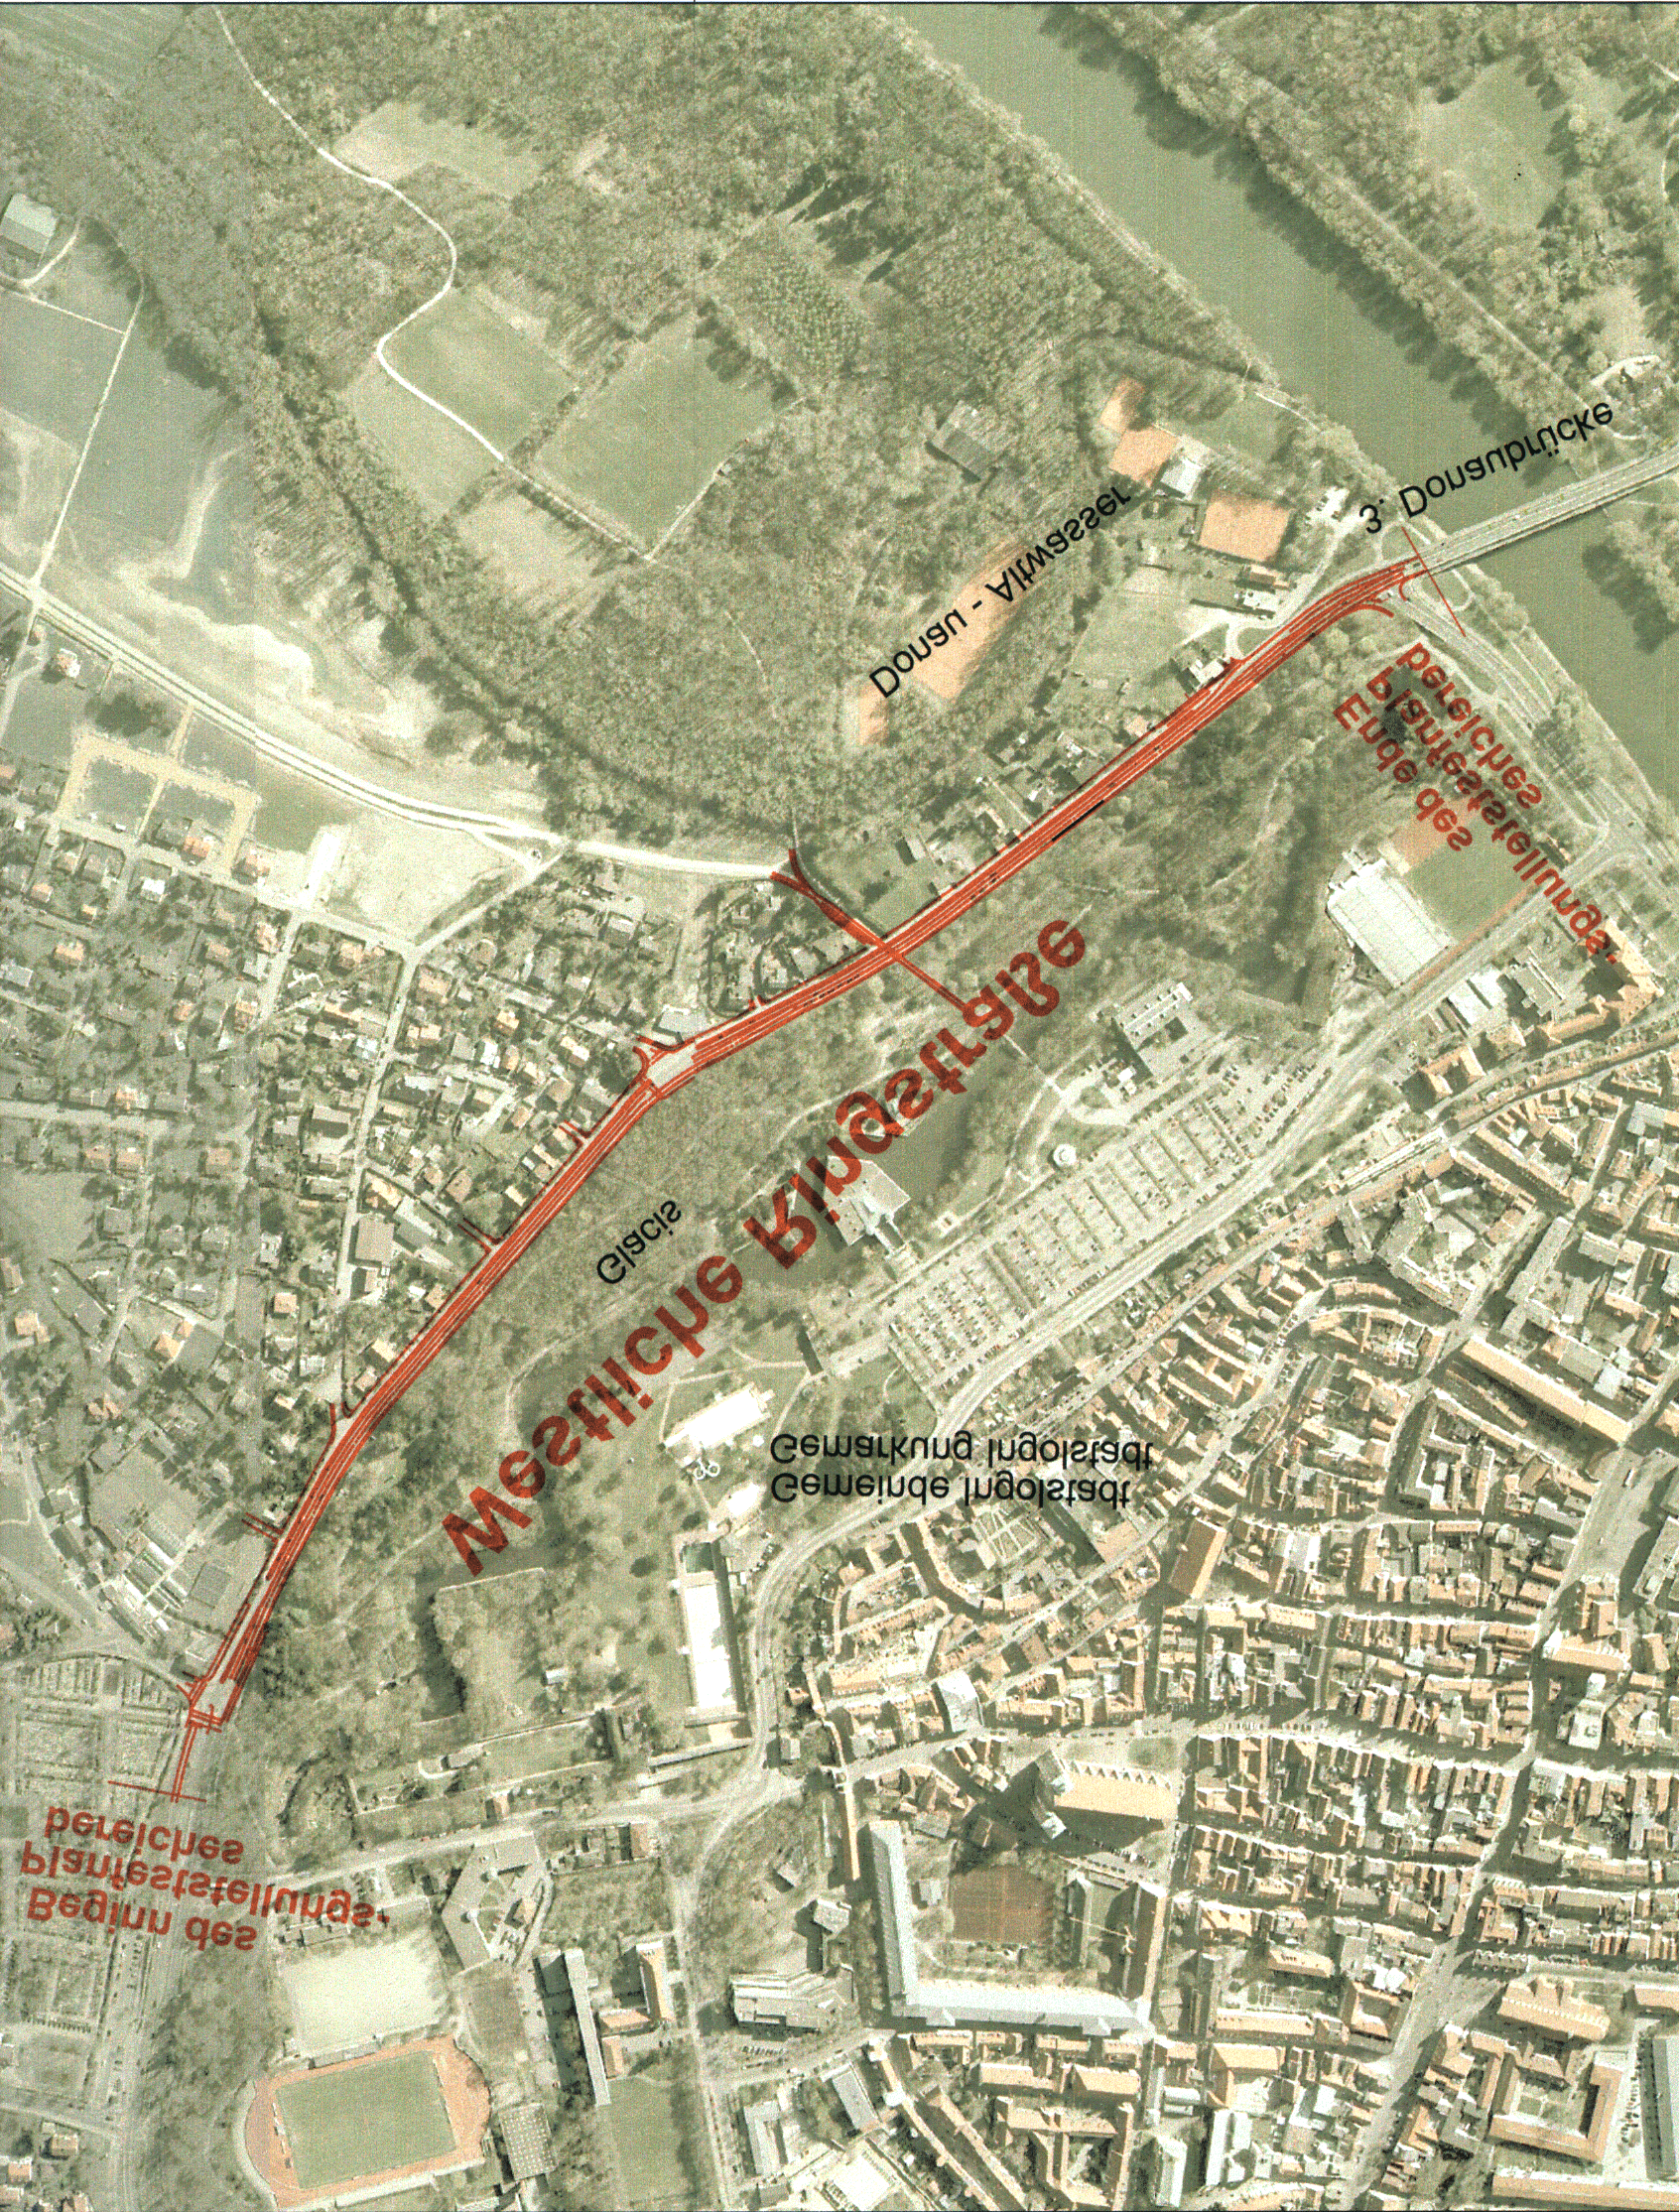 1. Historie Für den Ausbau der Westlichen Ringstraße in Ingolstadt hat die Regierung von Oberbayern im Planänderungsbeschluss vom 12.03.